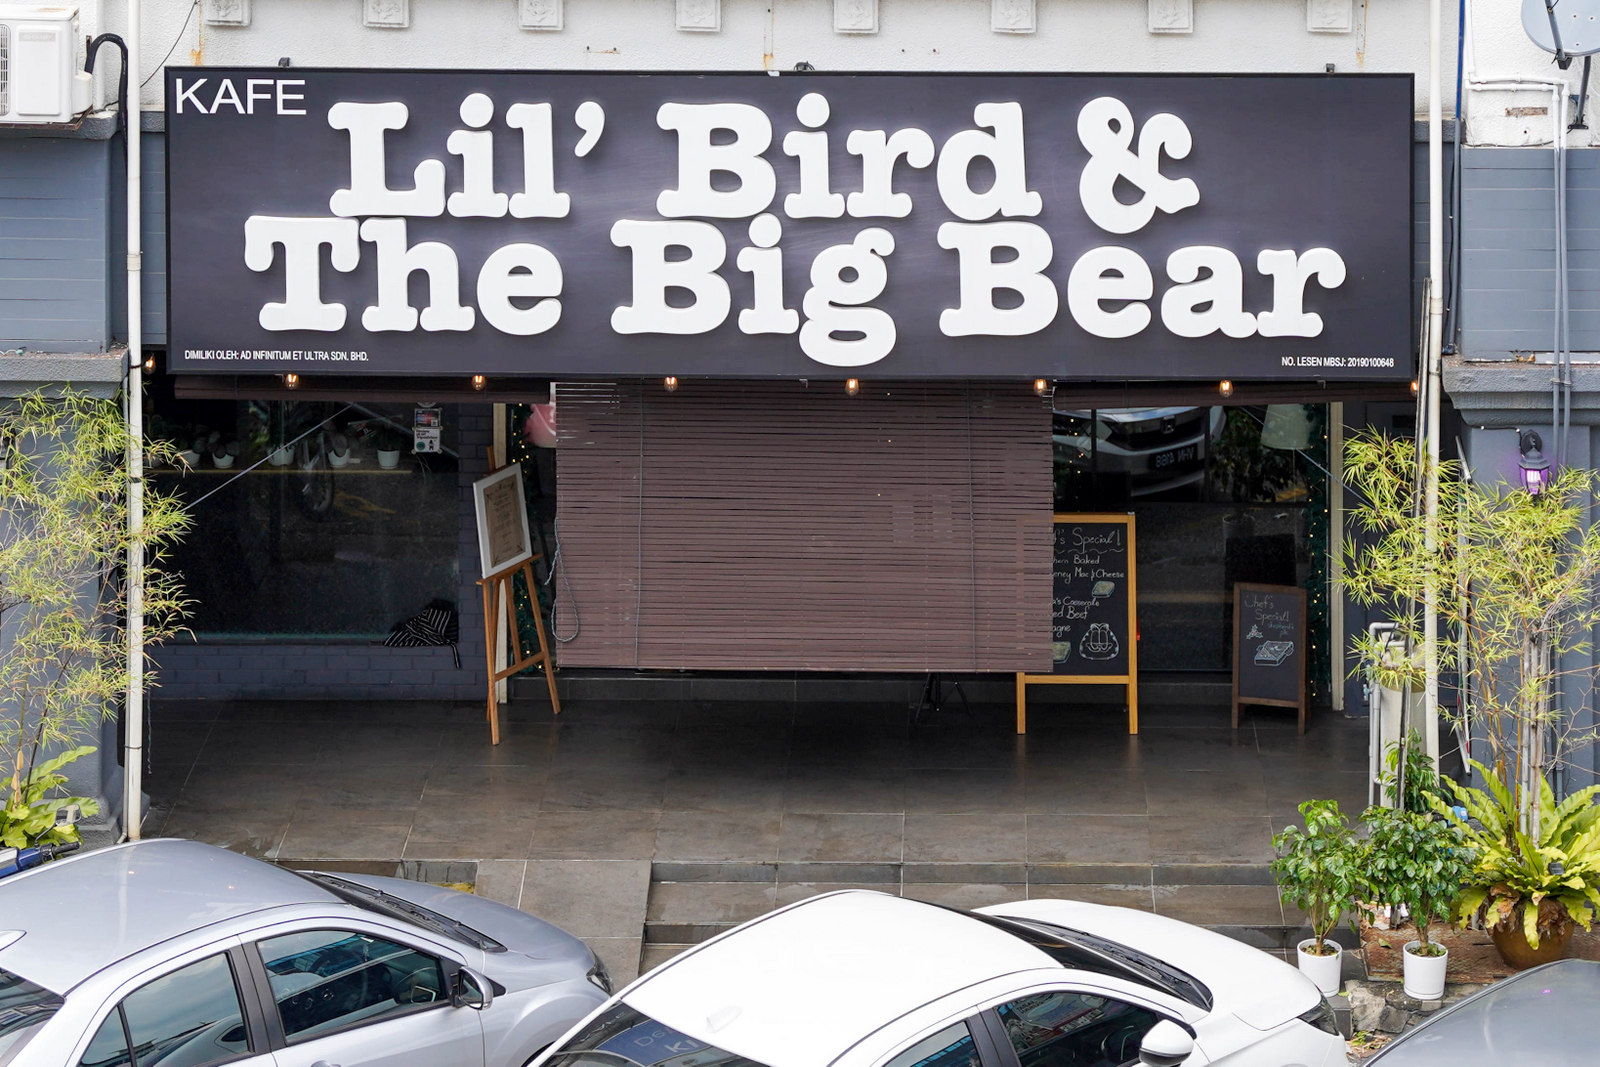 Lil' Bird & The Big Bear.jpg